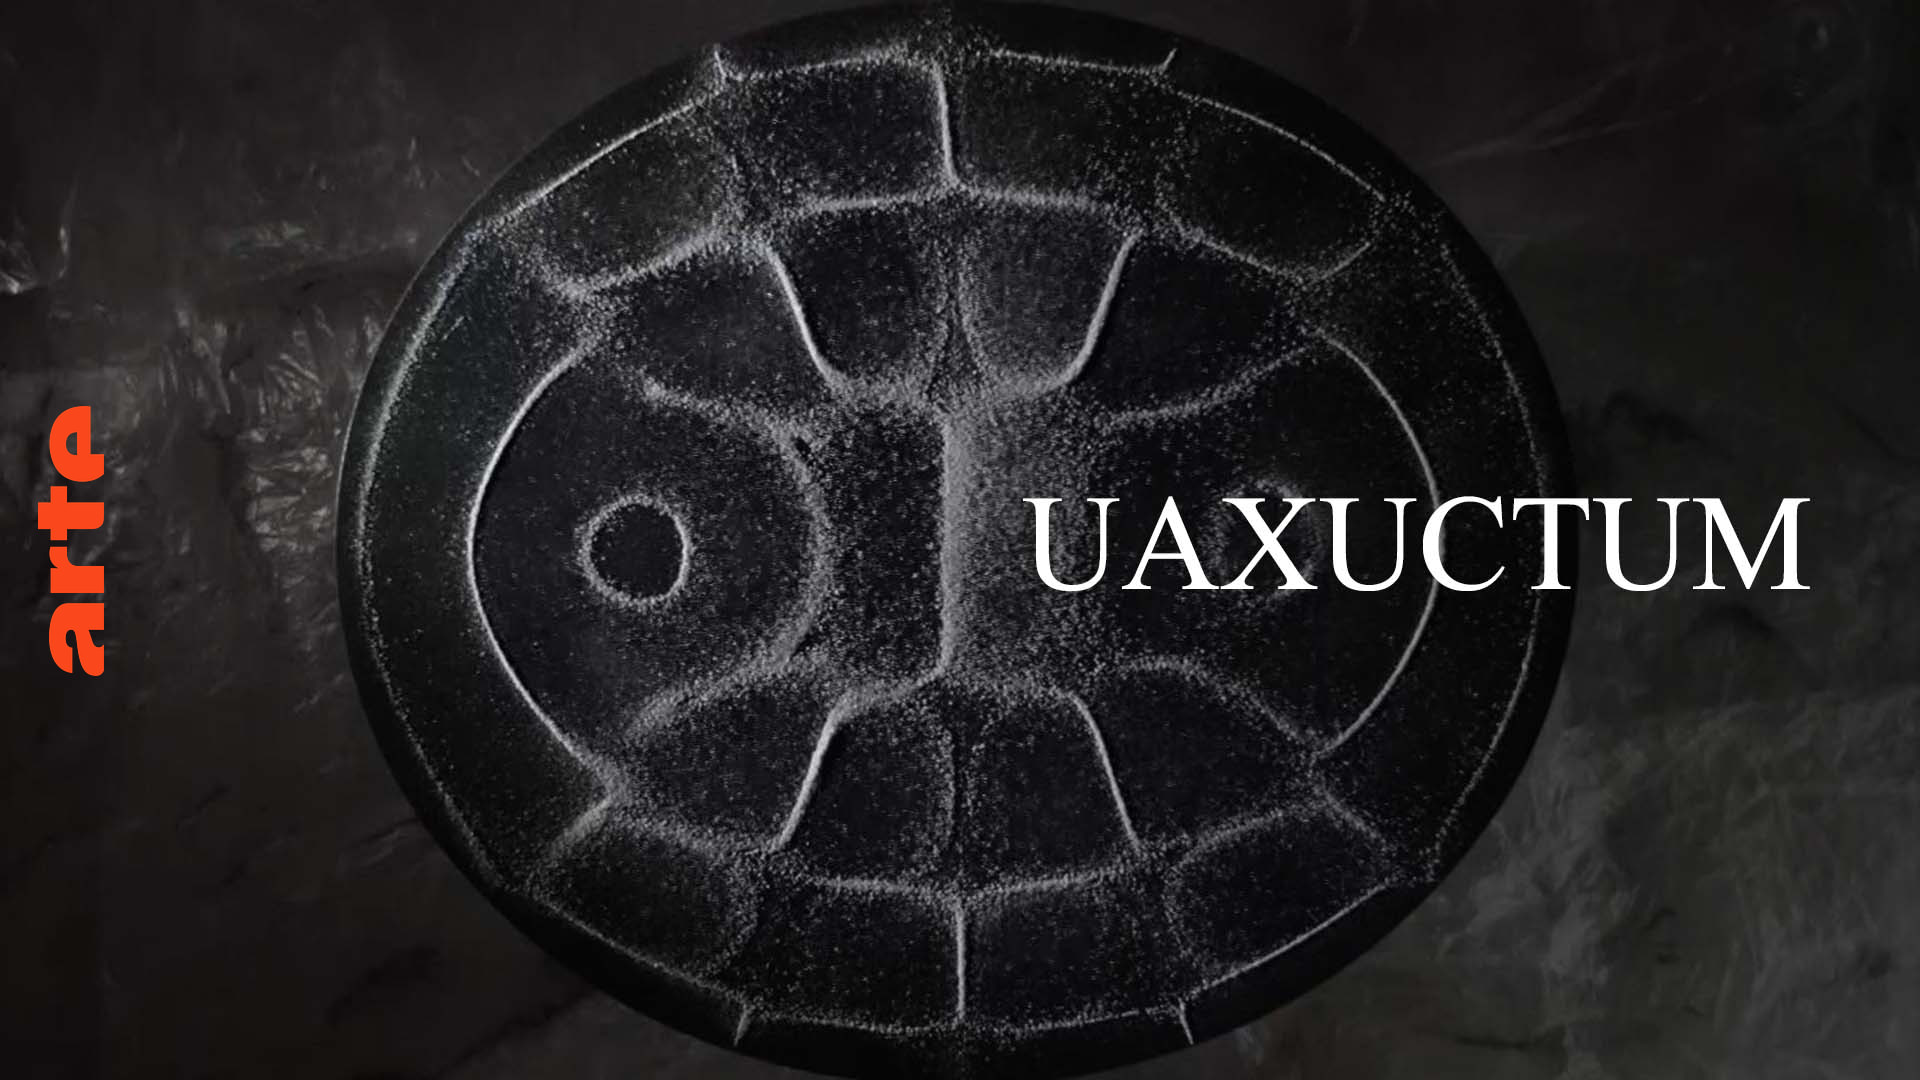 „Uaxuctum“, ein Werk von Giacinto Scelsi